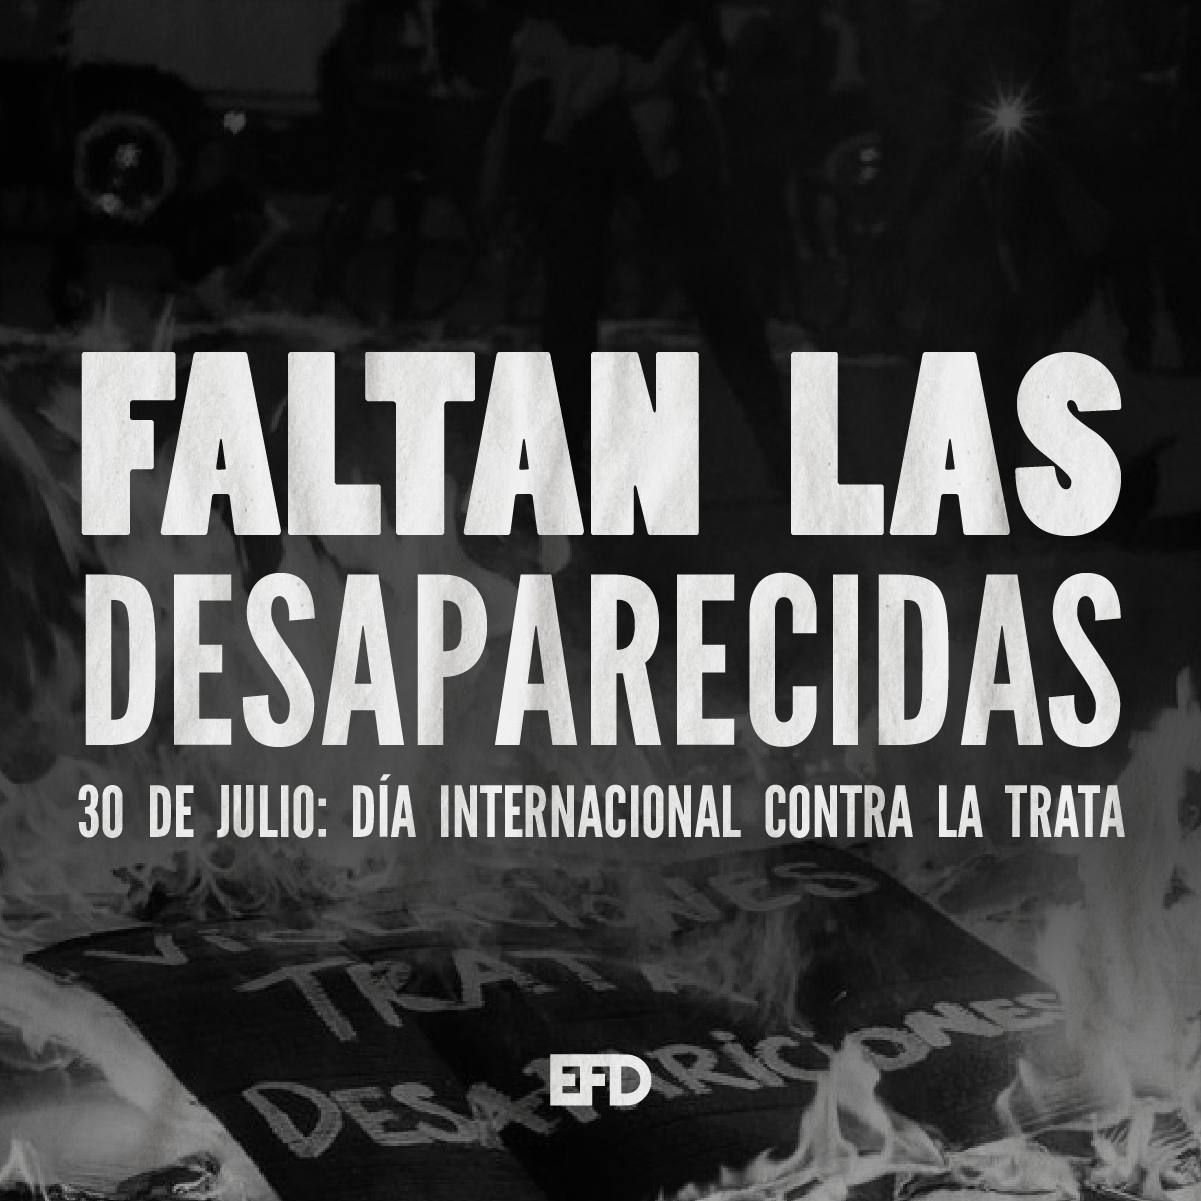 Faltan las desaparecidas. 30 de julio día internacional contra la trata.